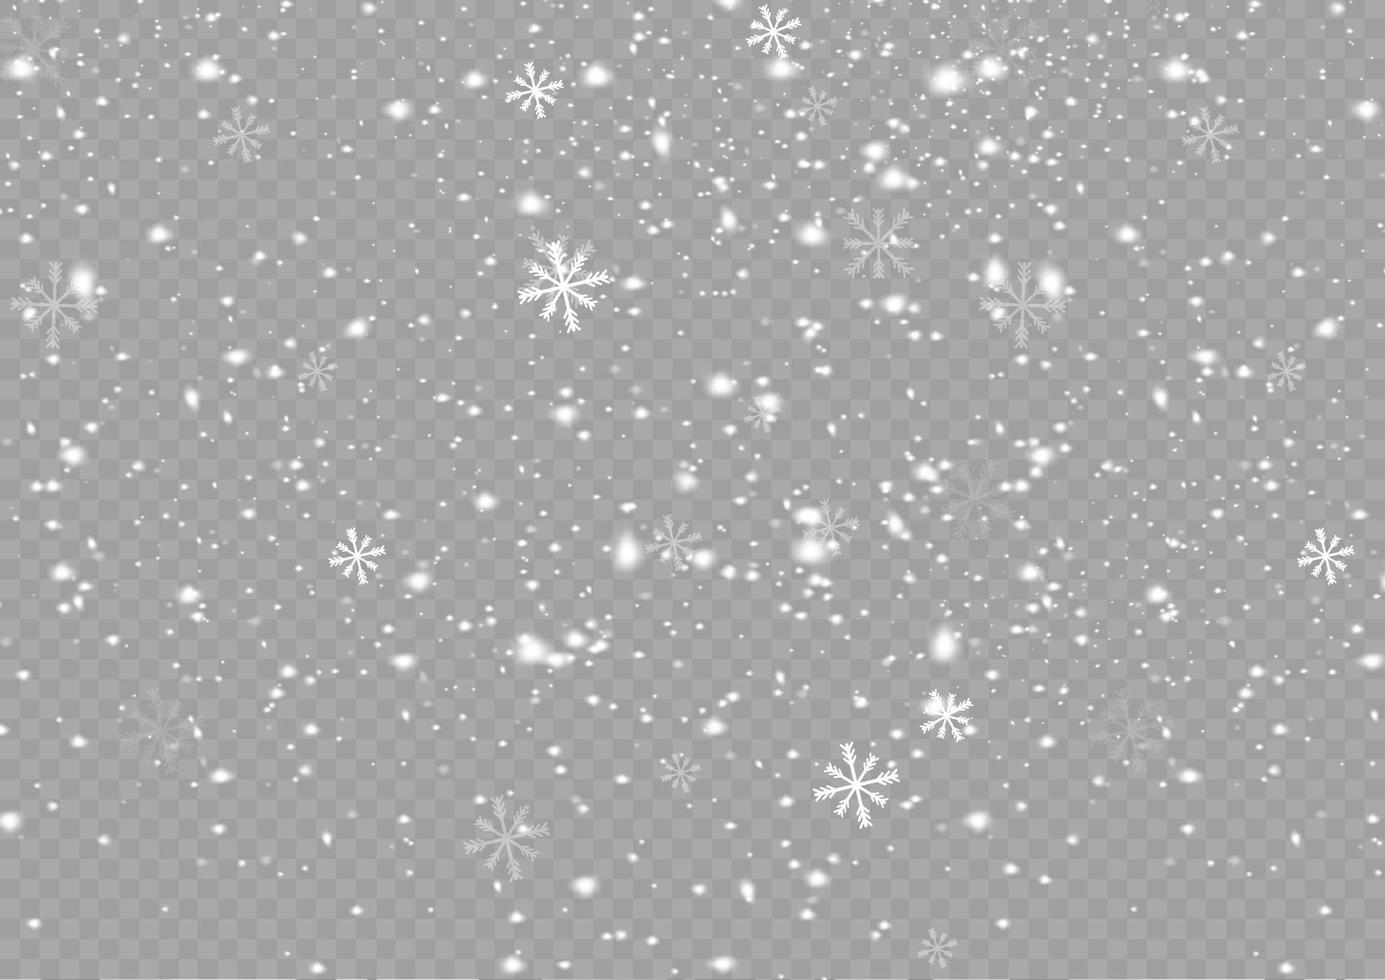 sneeuw en wind. wit helling decoratief element.vector illustratie. winter en sneeuw met mist. wind en mist. vector